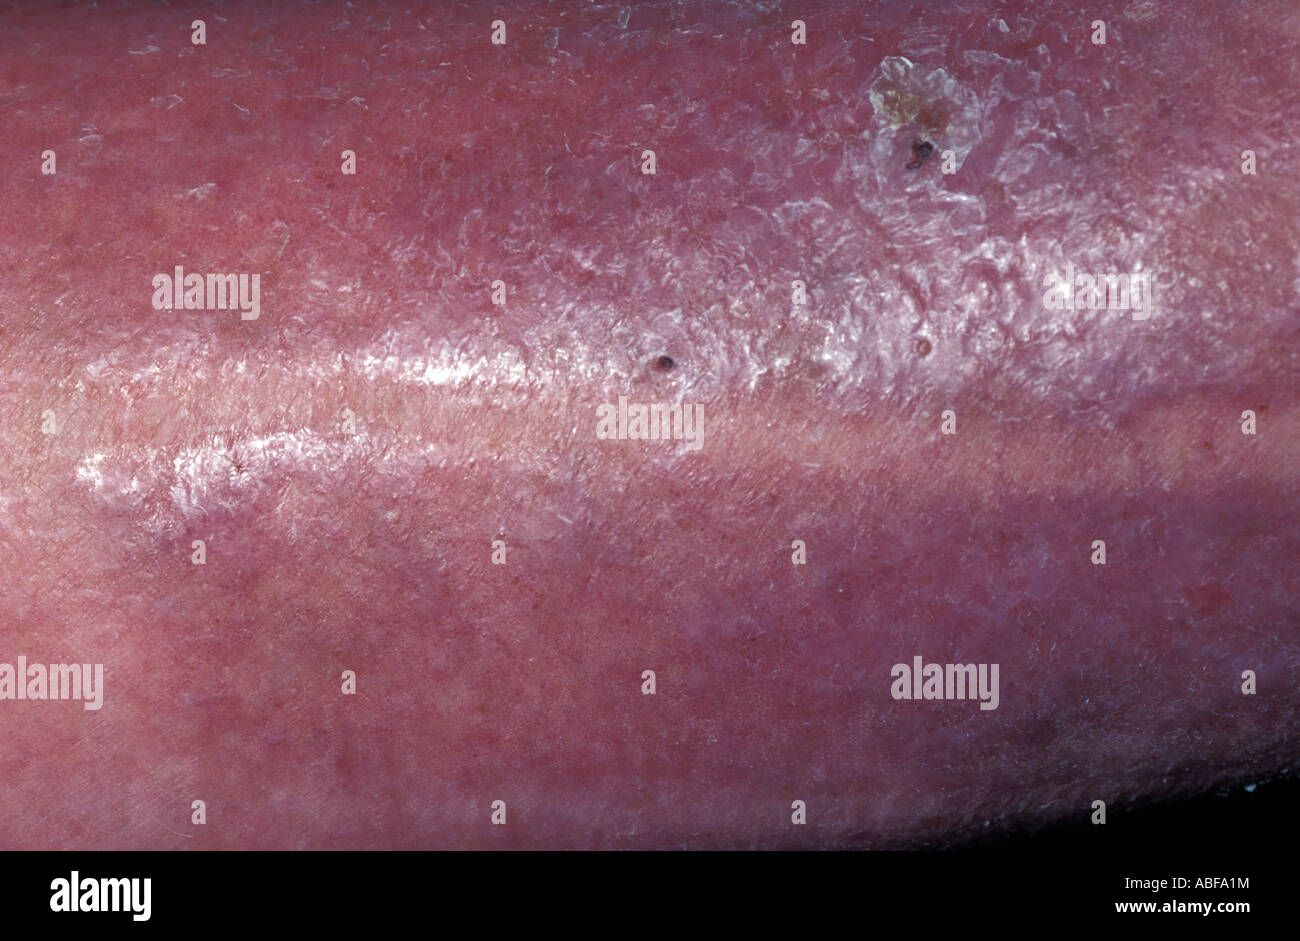 Eccema varicosa de la pierna asociado con insuffiency venoso Foto de stock